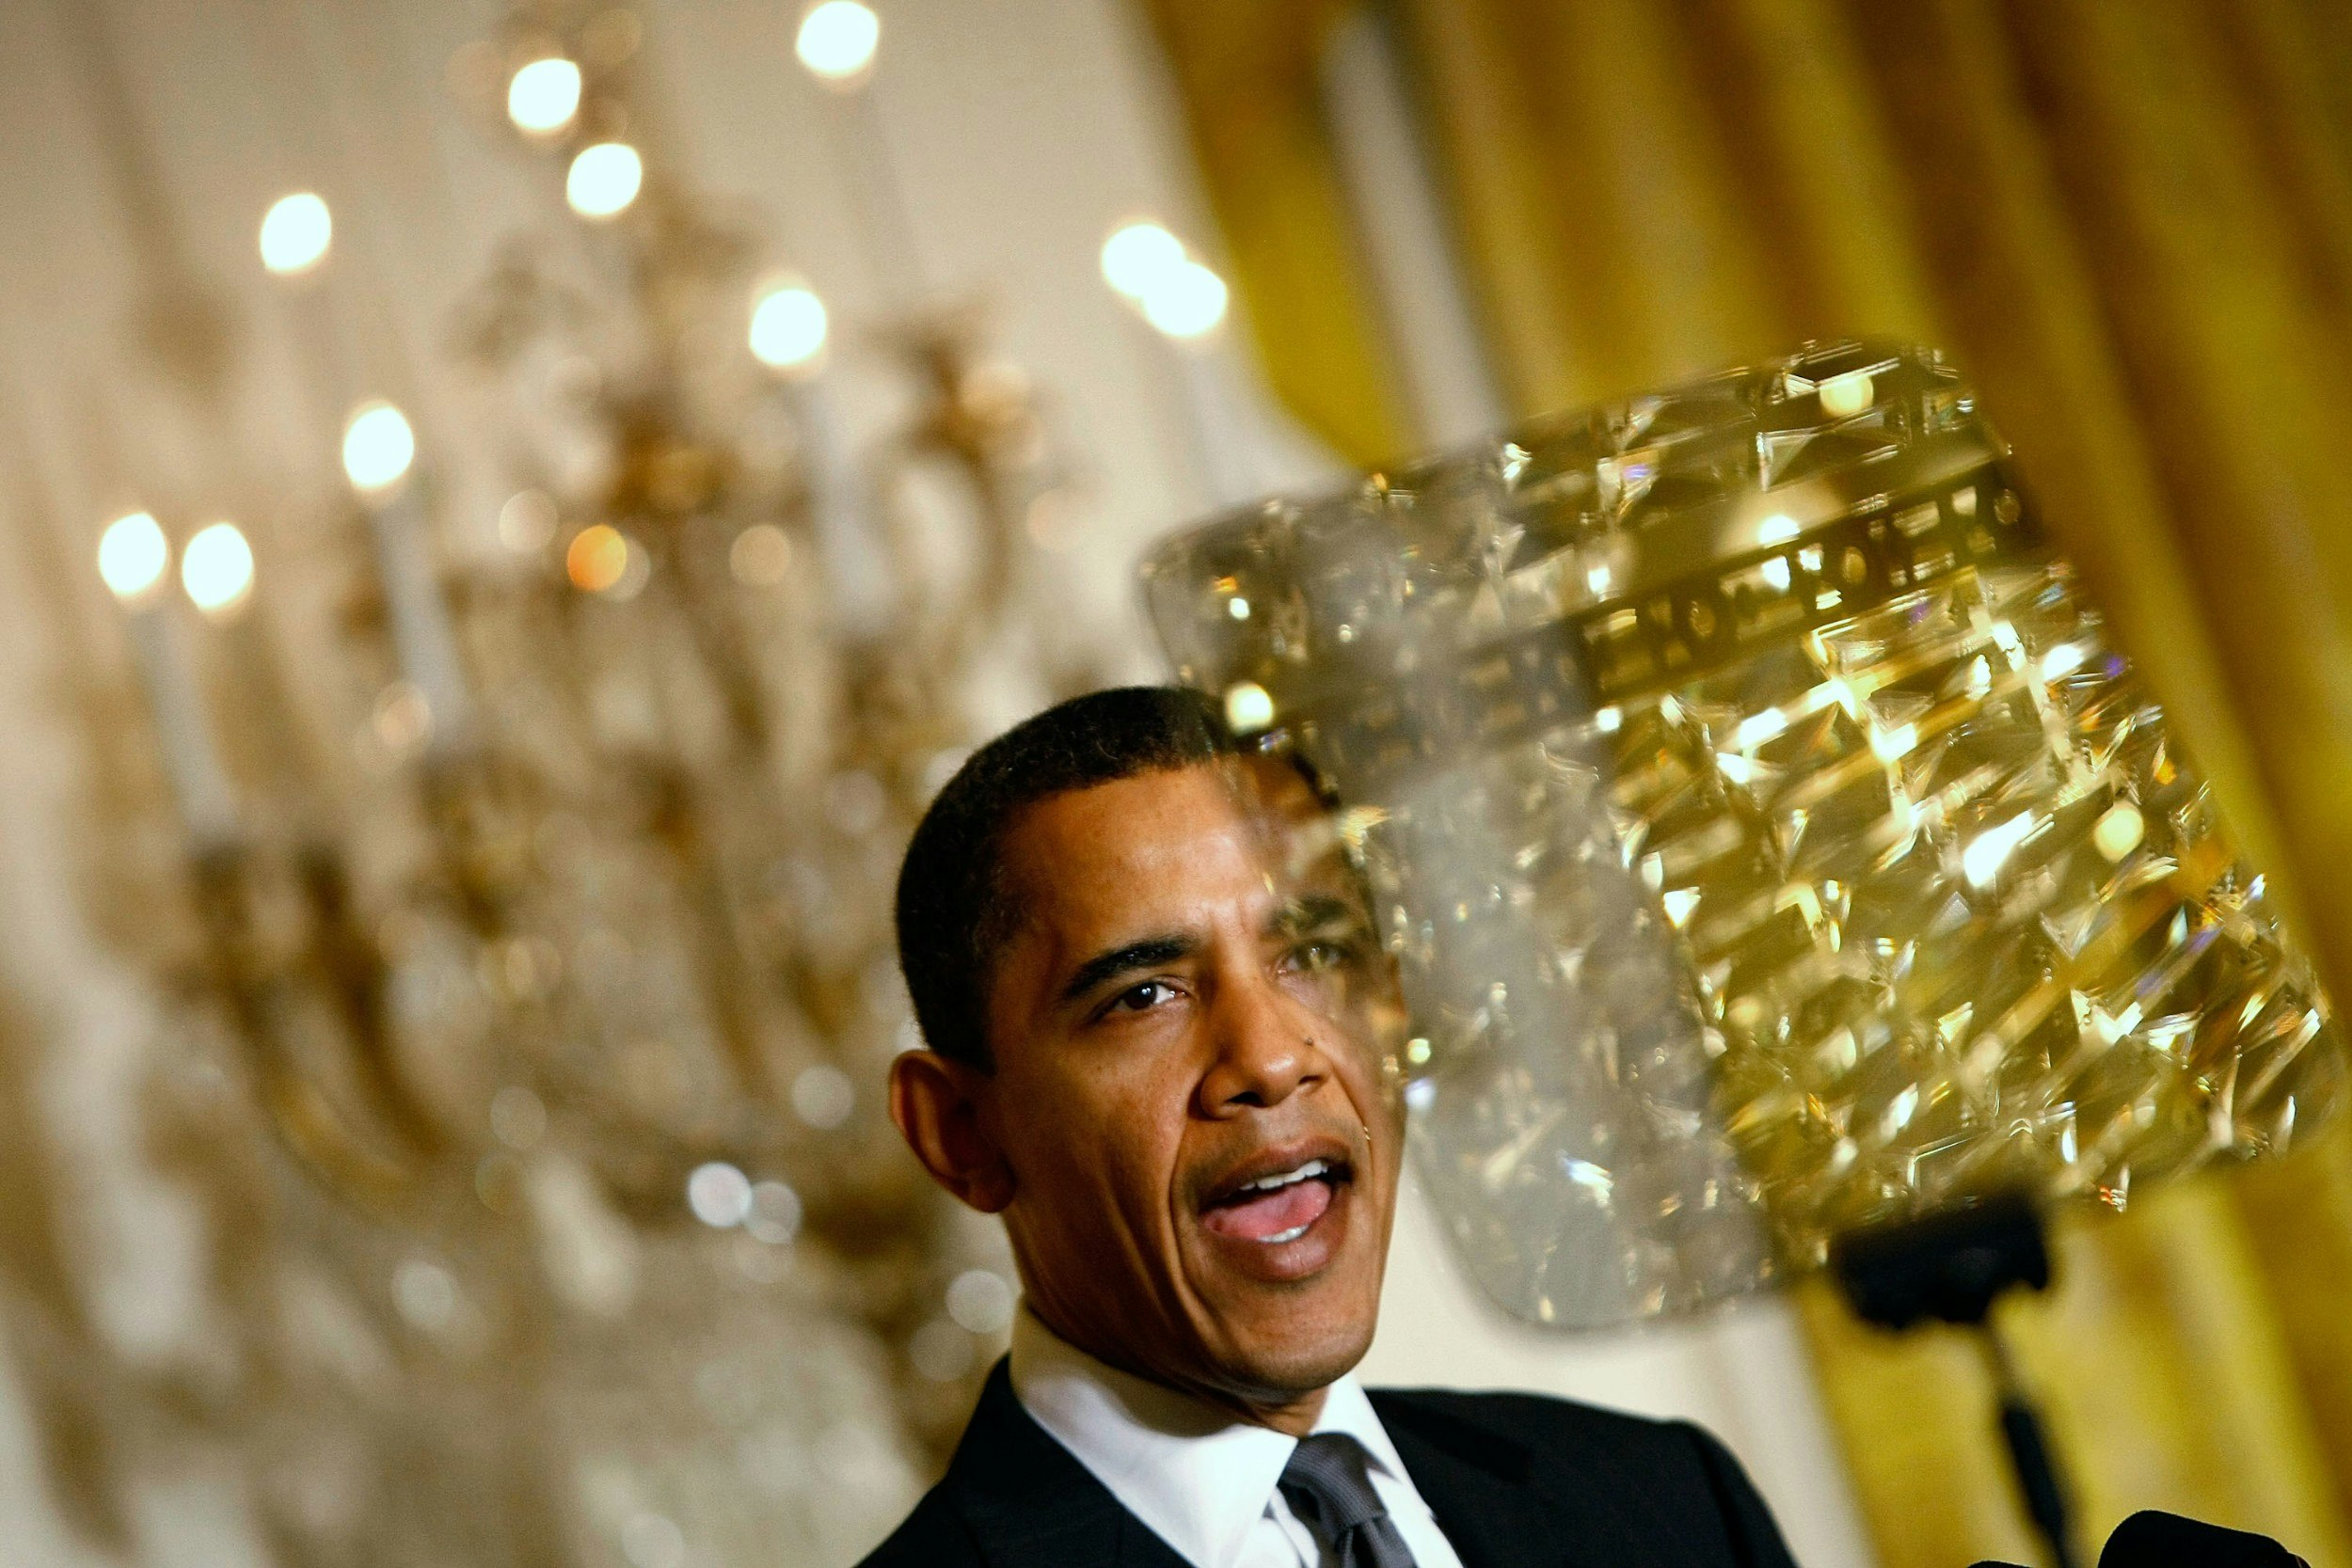 Barack Obama in front of a chandelier